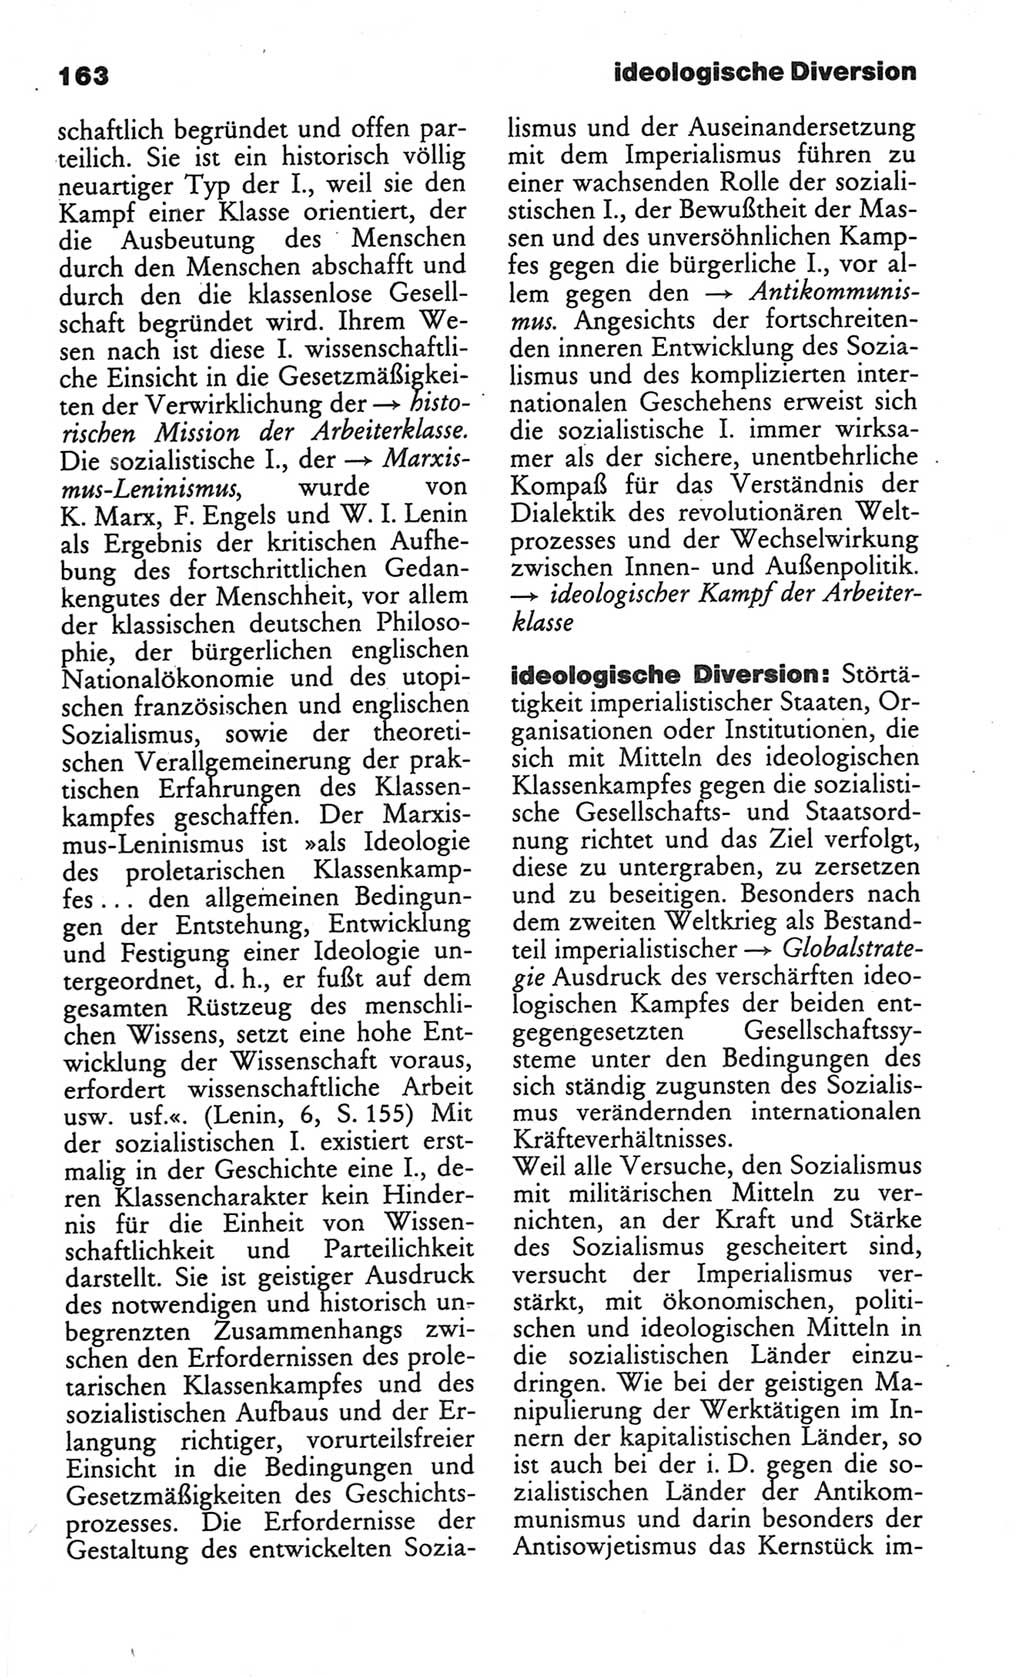 Wörterbuch des wissenschaftlichen Kommunismus [Deutsche Demokratische Republik (DDR)] 1984, Seite 163 (Wb. wiss. Komm. DDR 1984, S. 163)